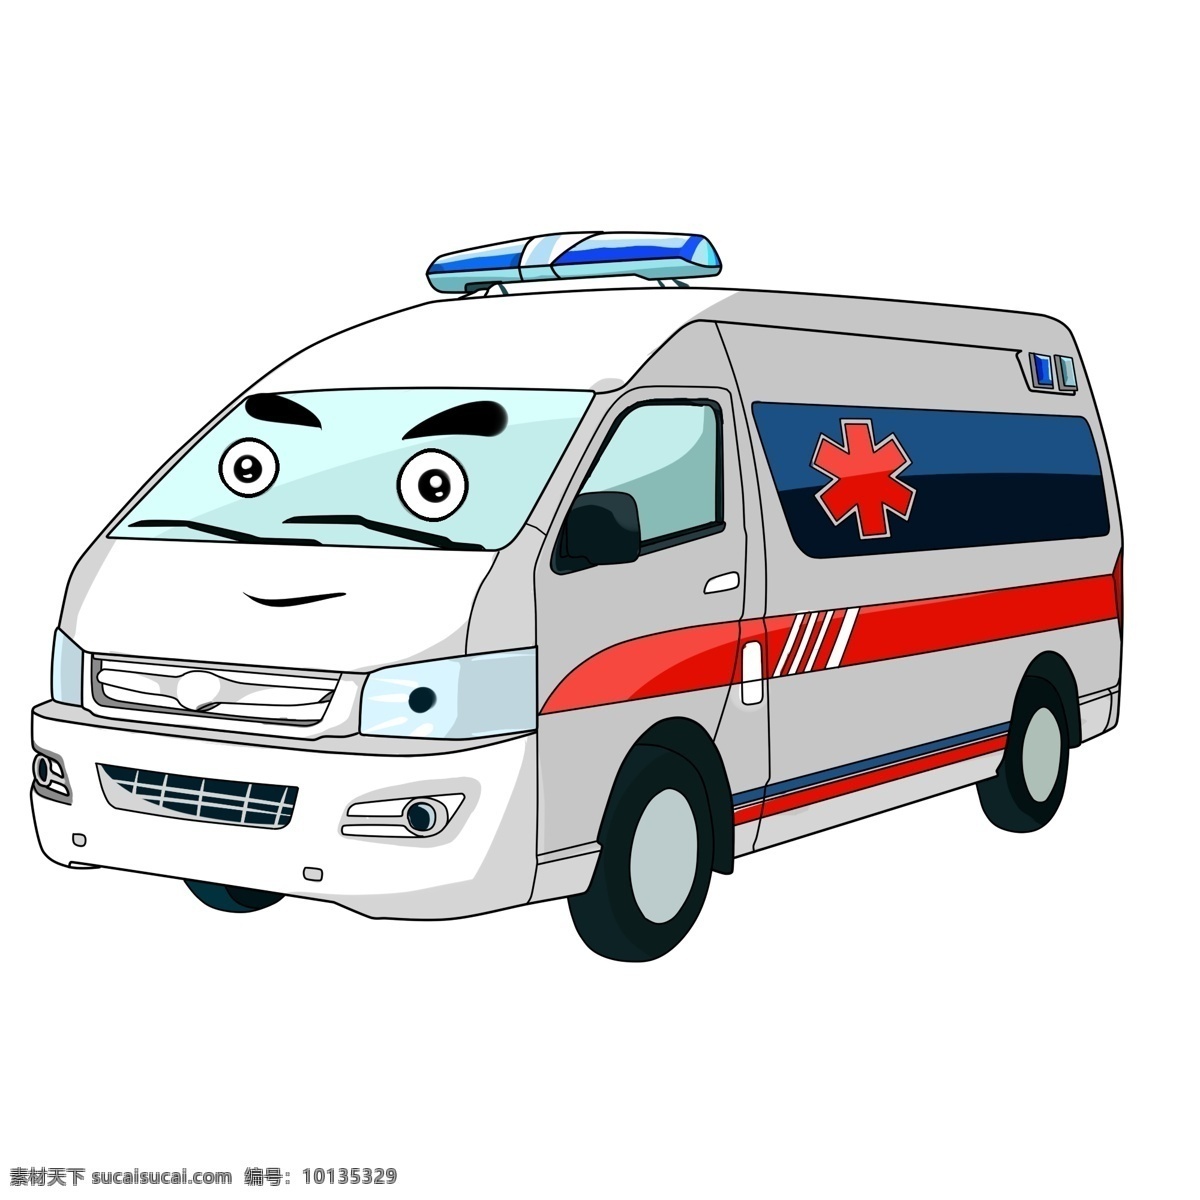 卡通 手绘 救护车 插画 汽车 急救 抢险 红色 响铃 救护 安全 援助伤病人员 医疗 卡通手绘